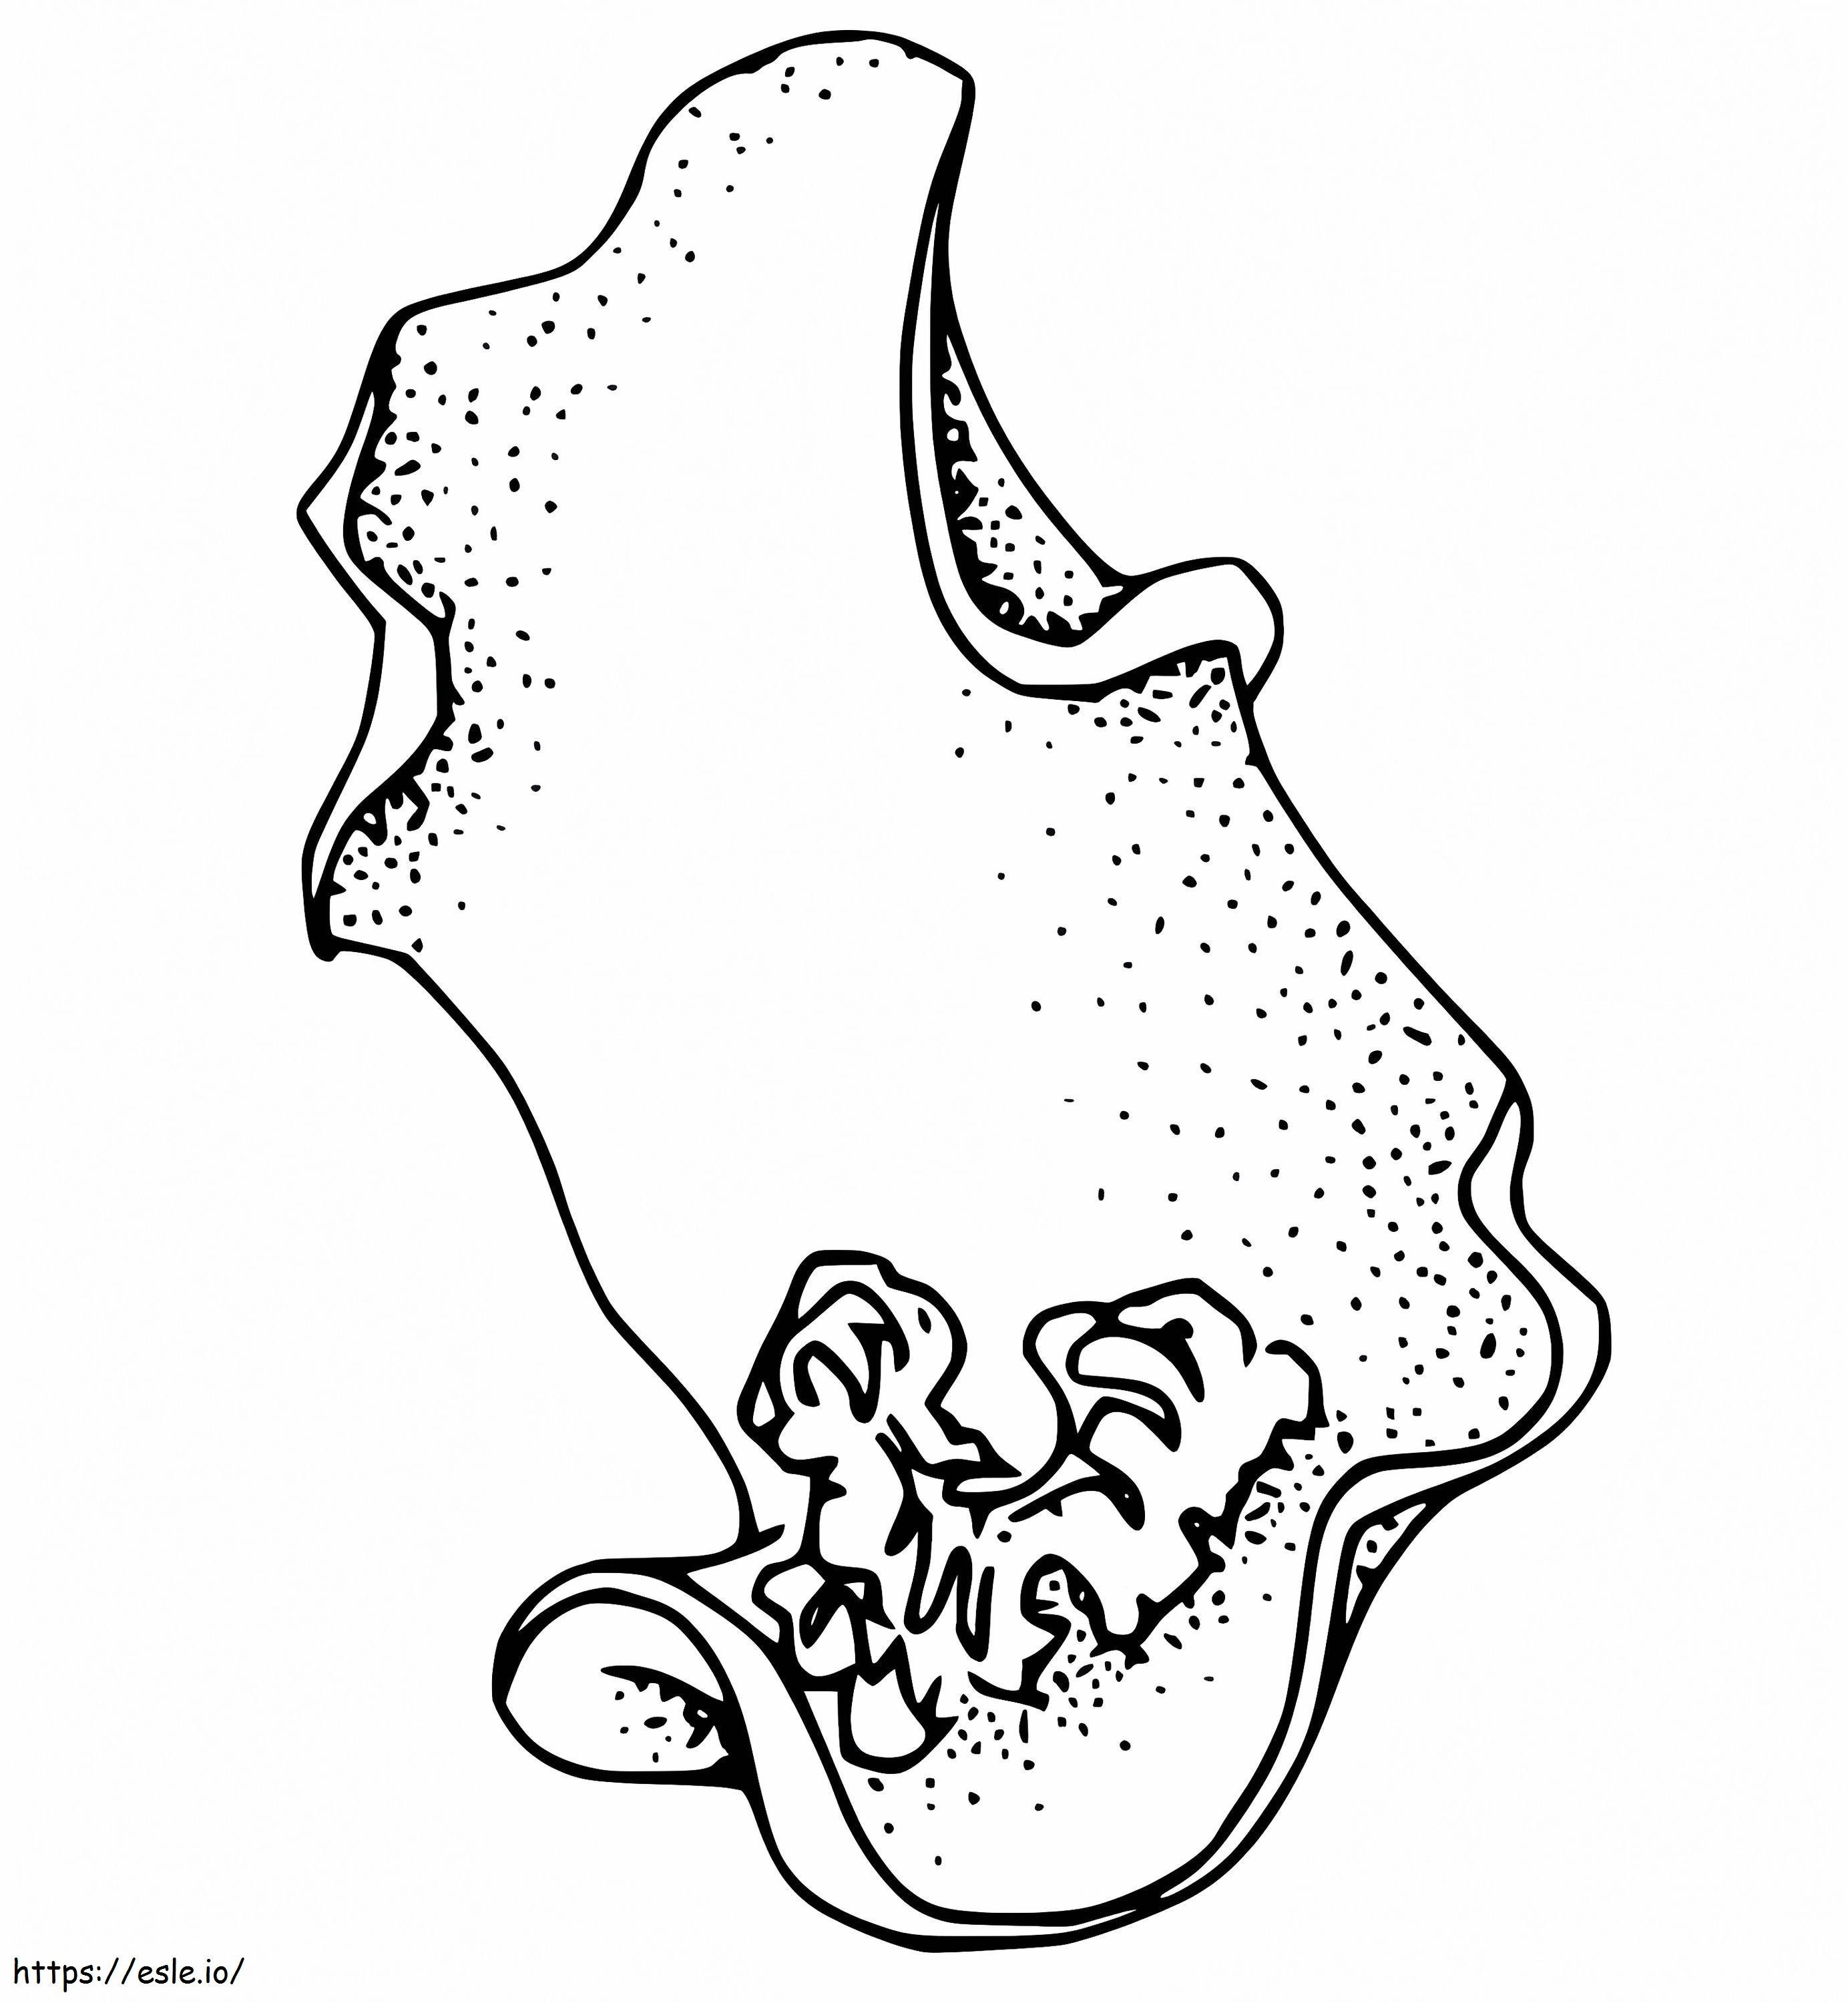 Normal Sea Slug coloring page